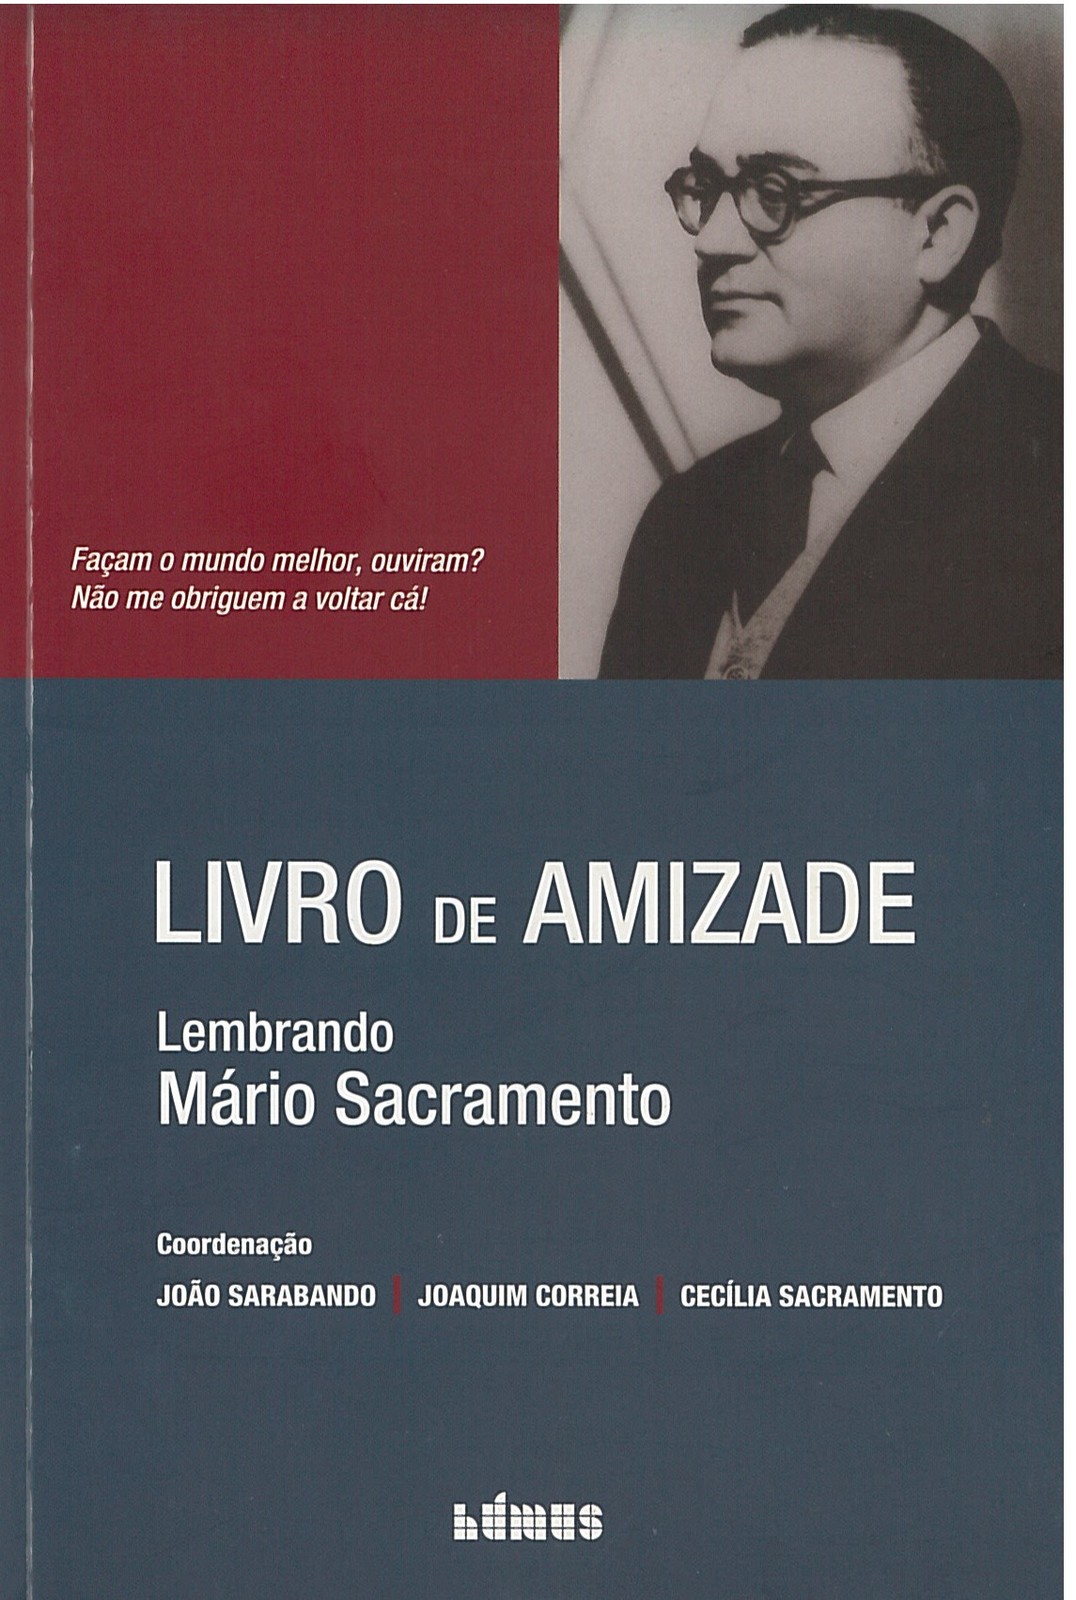 João Sarabando, Joaquim Correia, Célia Sacramento - Livro de Amizade, Lembrando Mário Sacramento